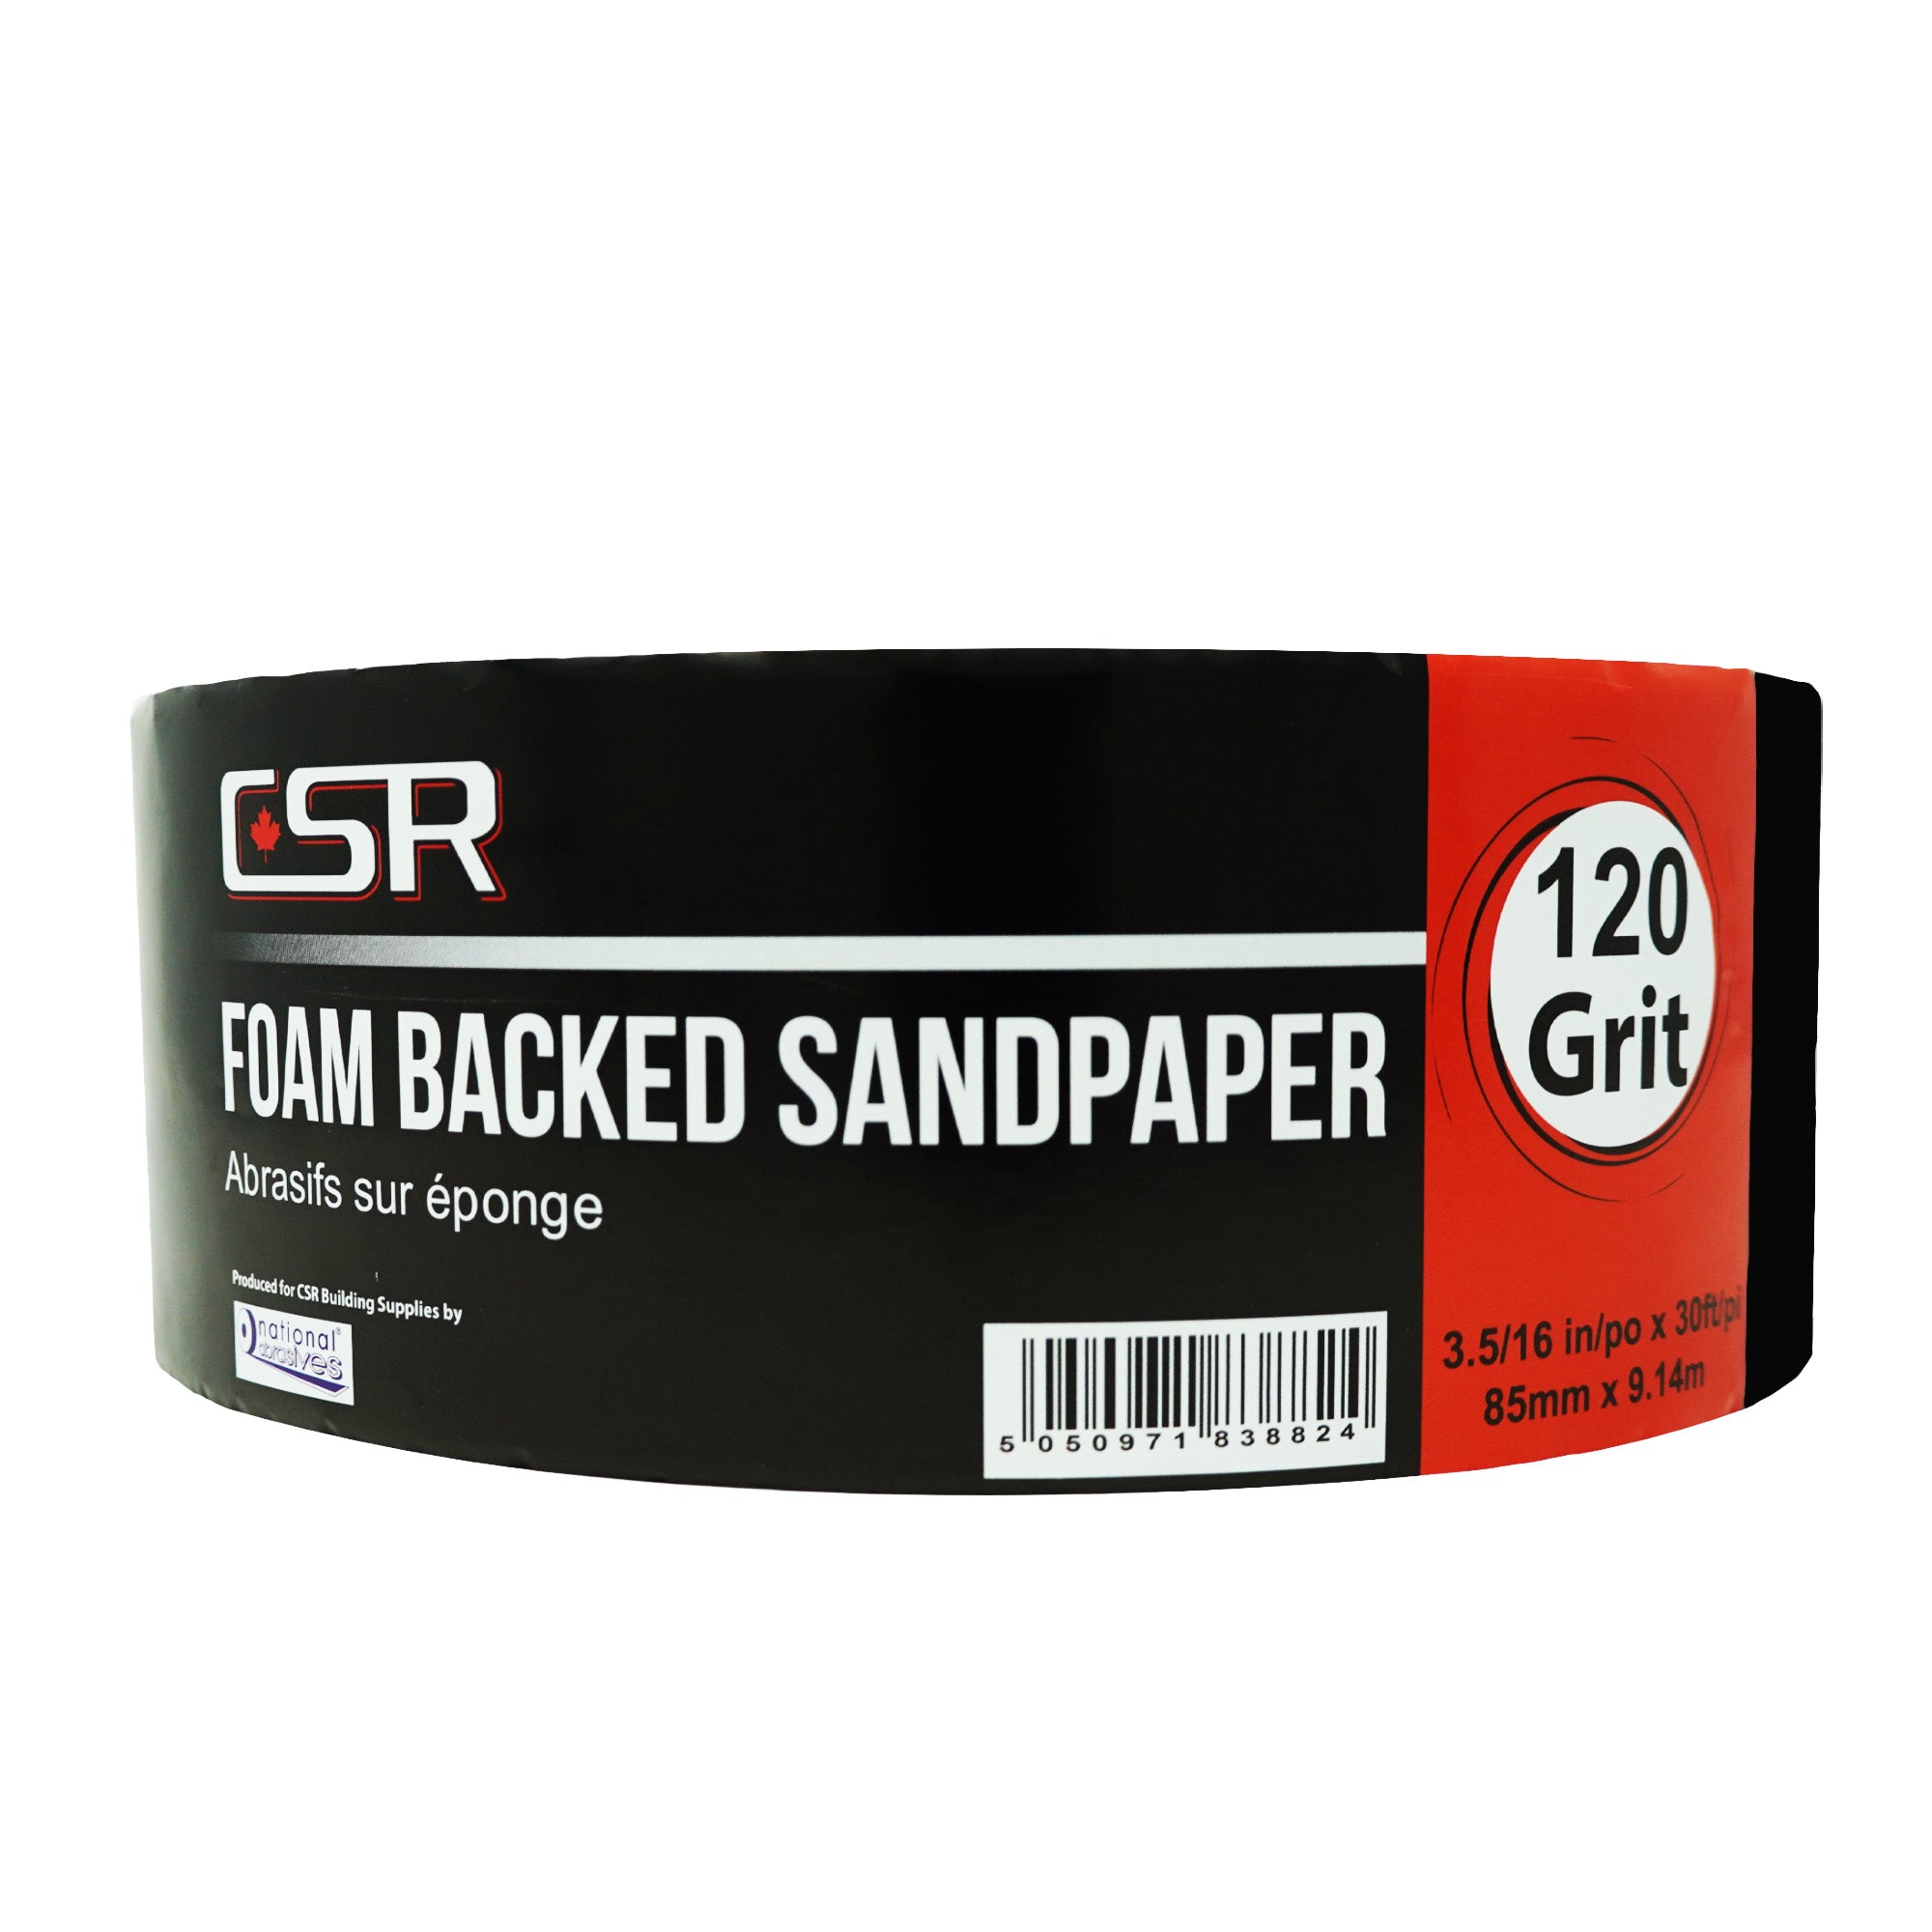 CSR 3-5/16" x 30' Papel de lija con respaldo de esponja